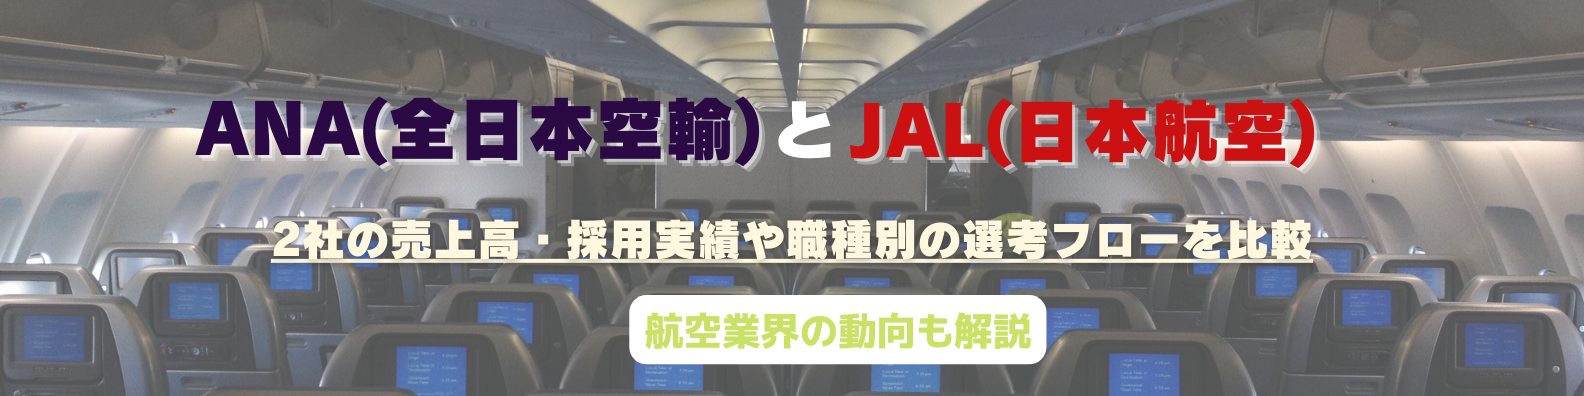 【大手航空会社比較】ANA・JALの違いとは-強み・社風・平均年収・職種別選考フロー比較-